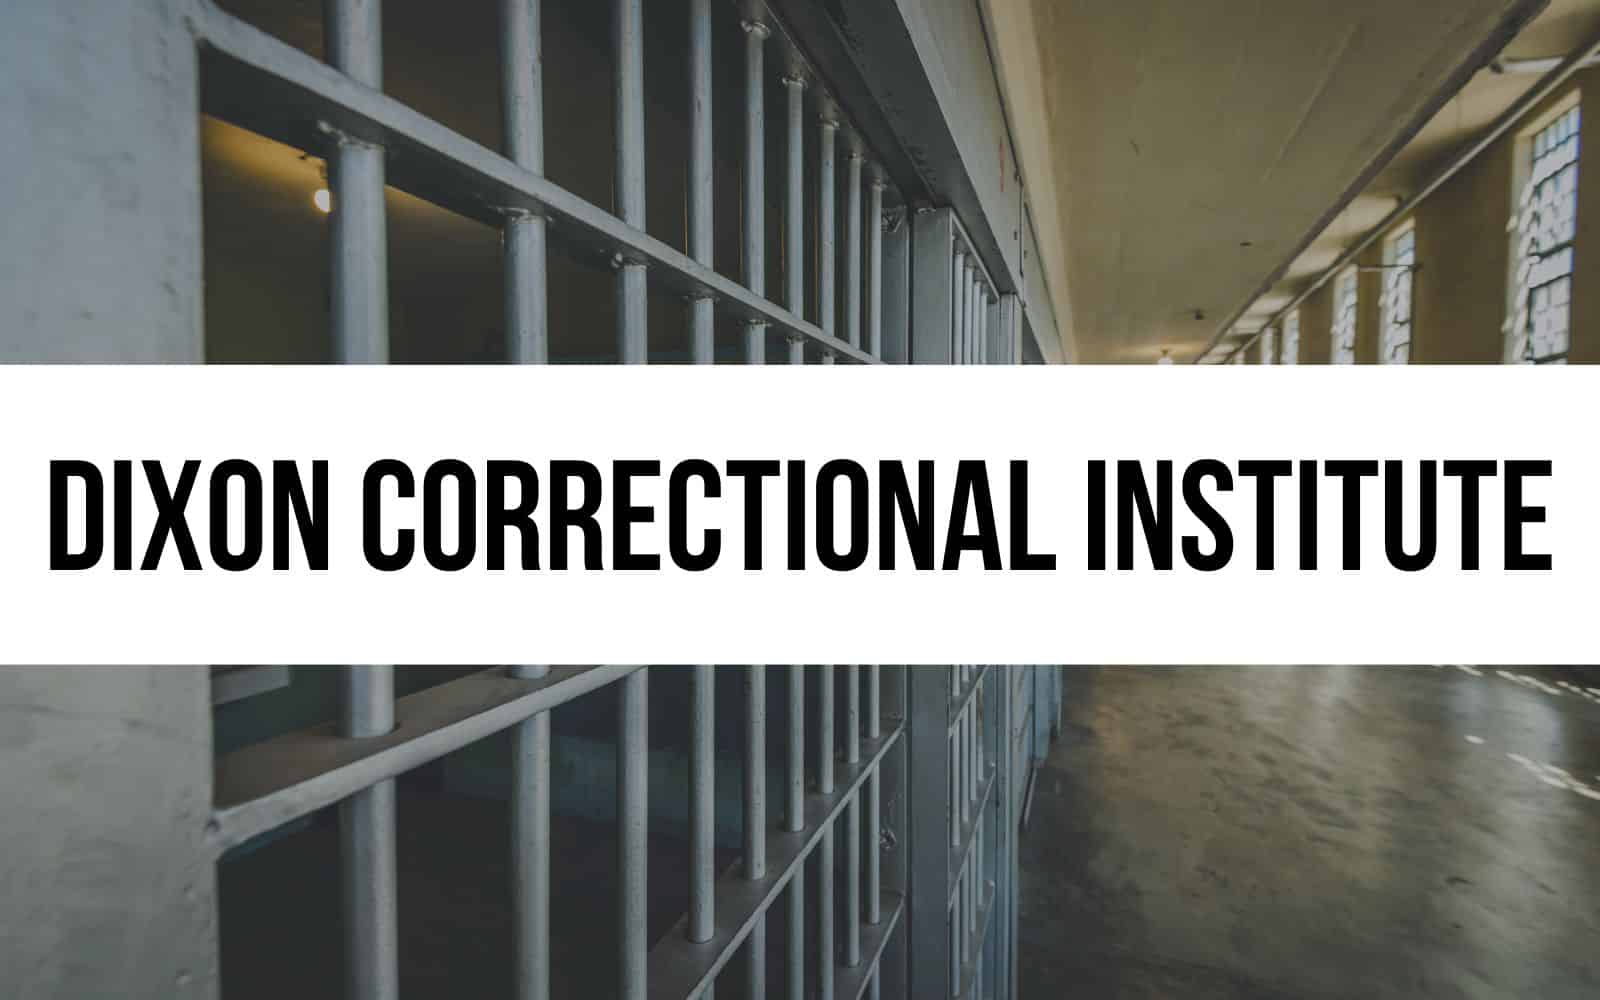 Dixon Correctional Institute